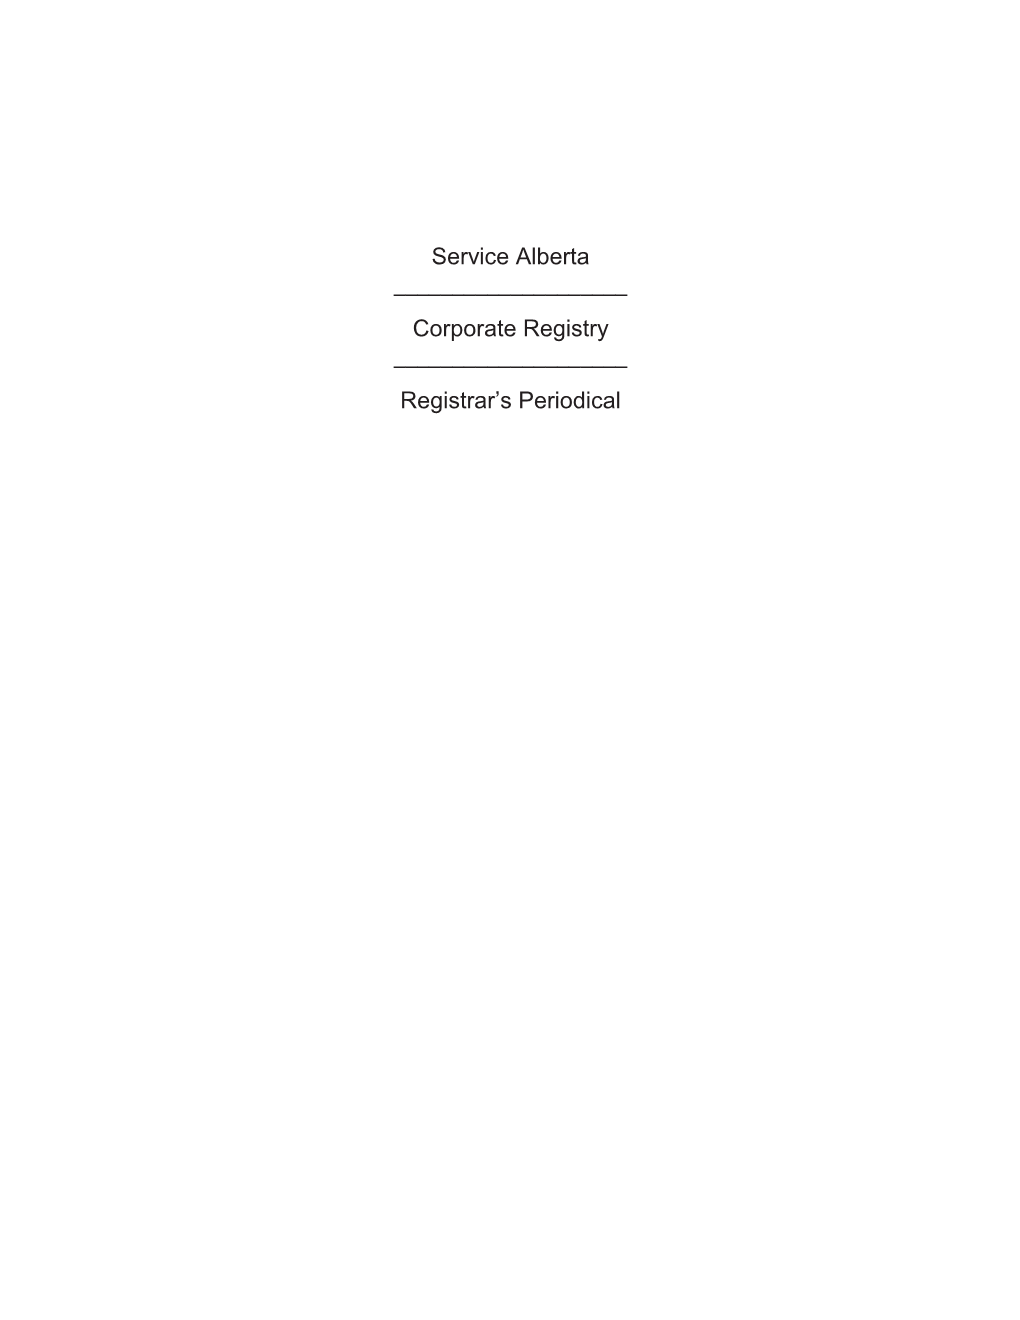 Corporate Registry Registrar's Periodical